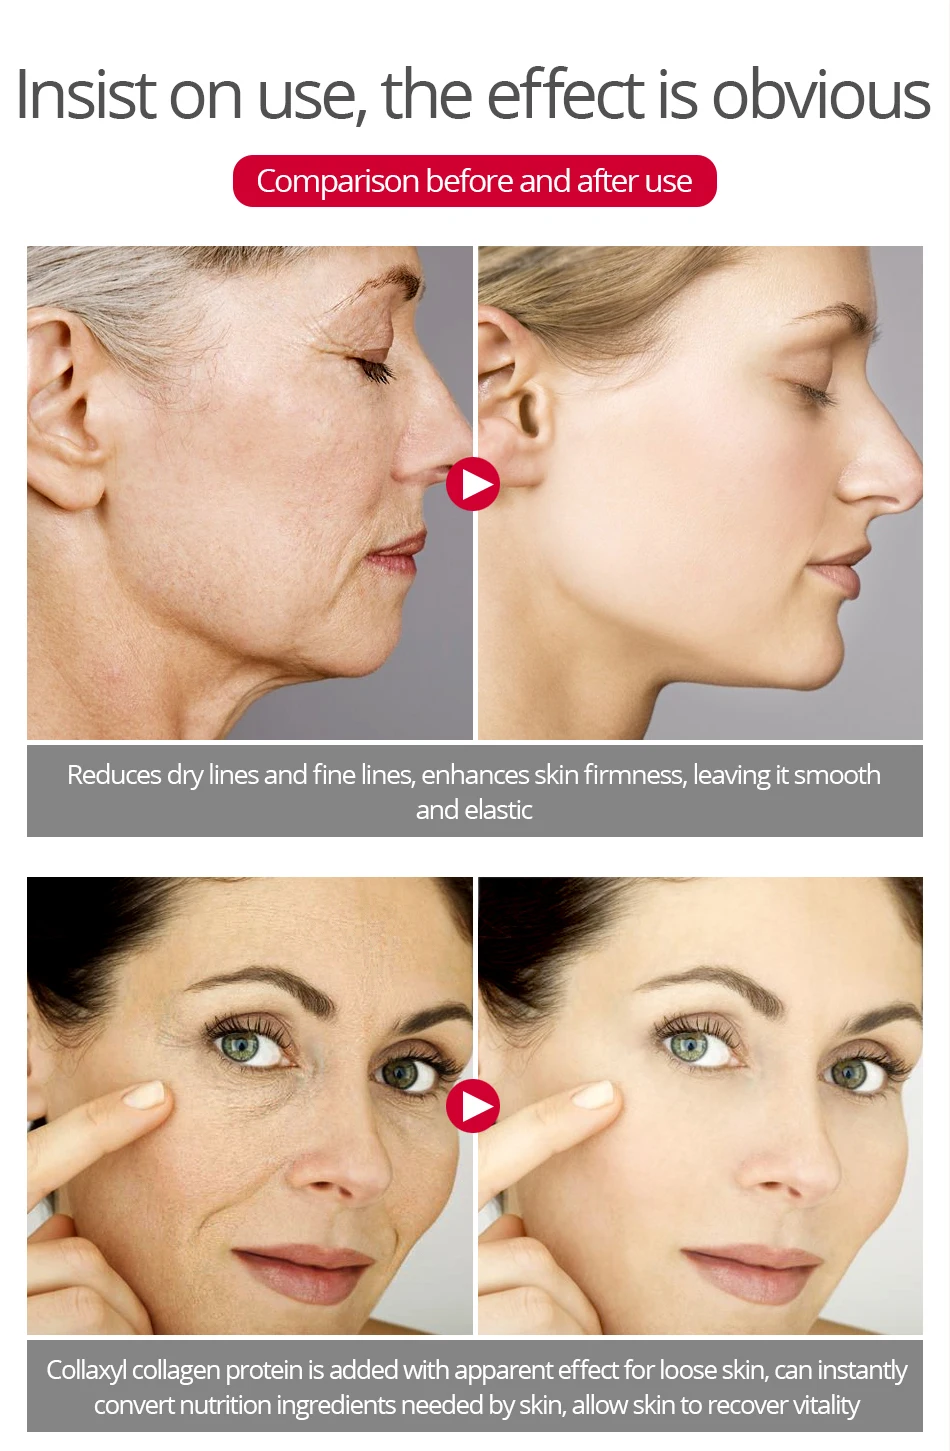 Snail Face Cream Collagen Anti-Wrinkle Whitening Facial Cream Hyaluronic Acid Moisturizing Anti-aging Nourishing Serum Skin Care